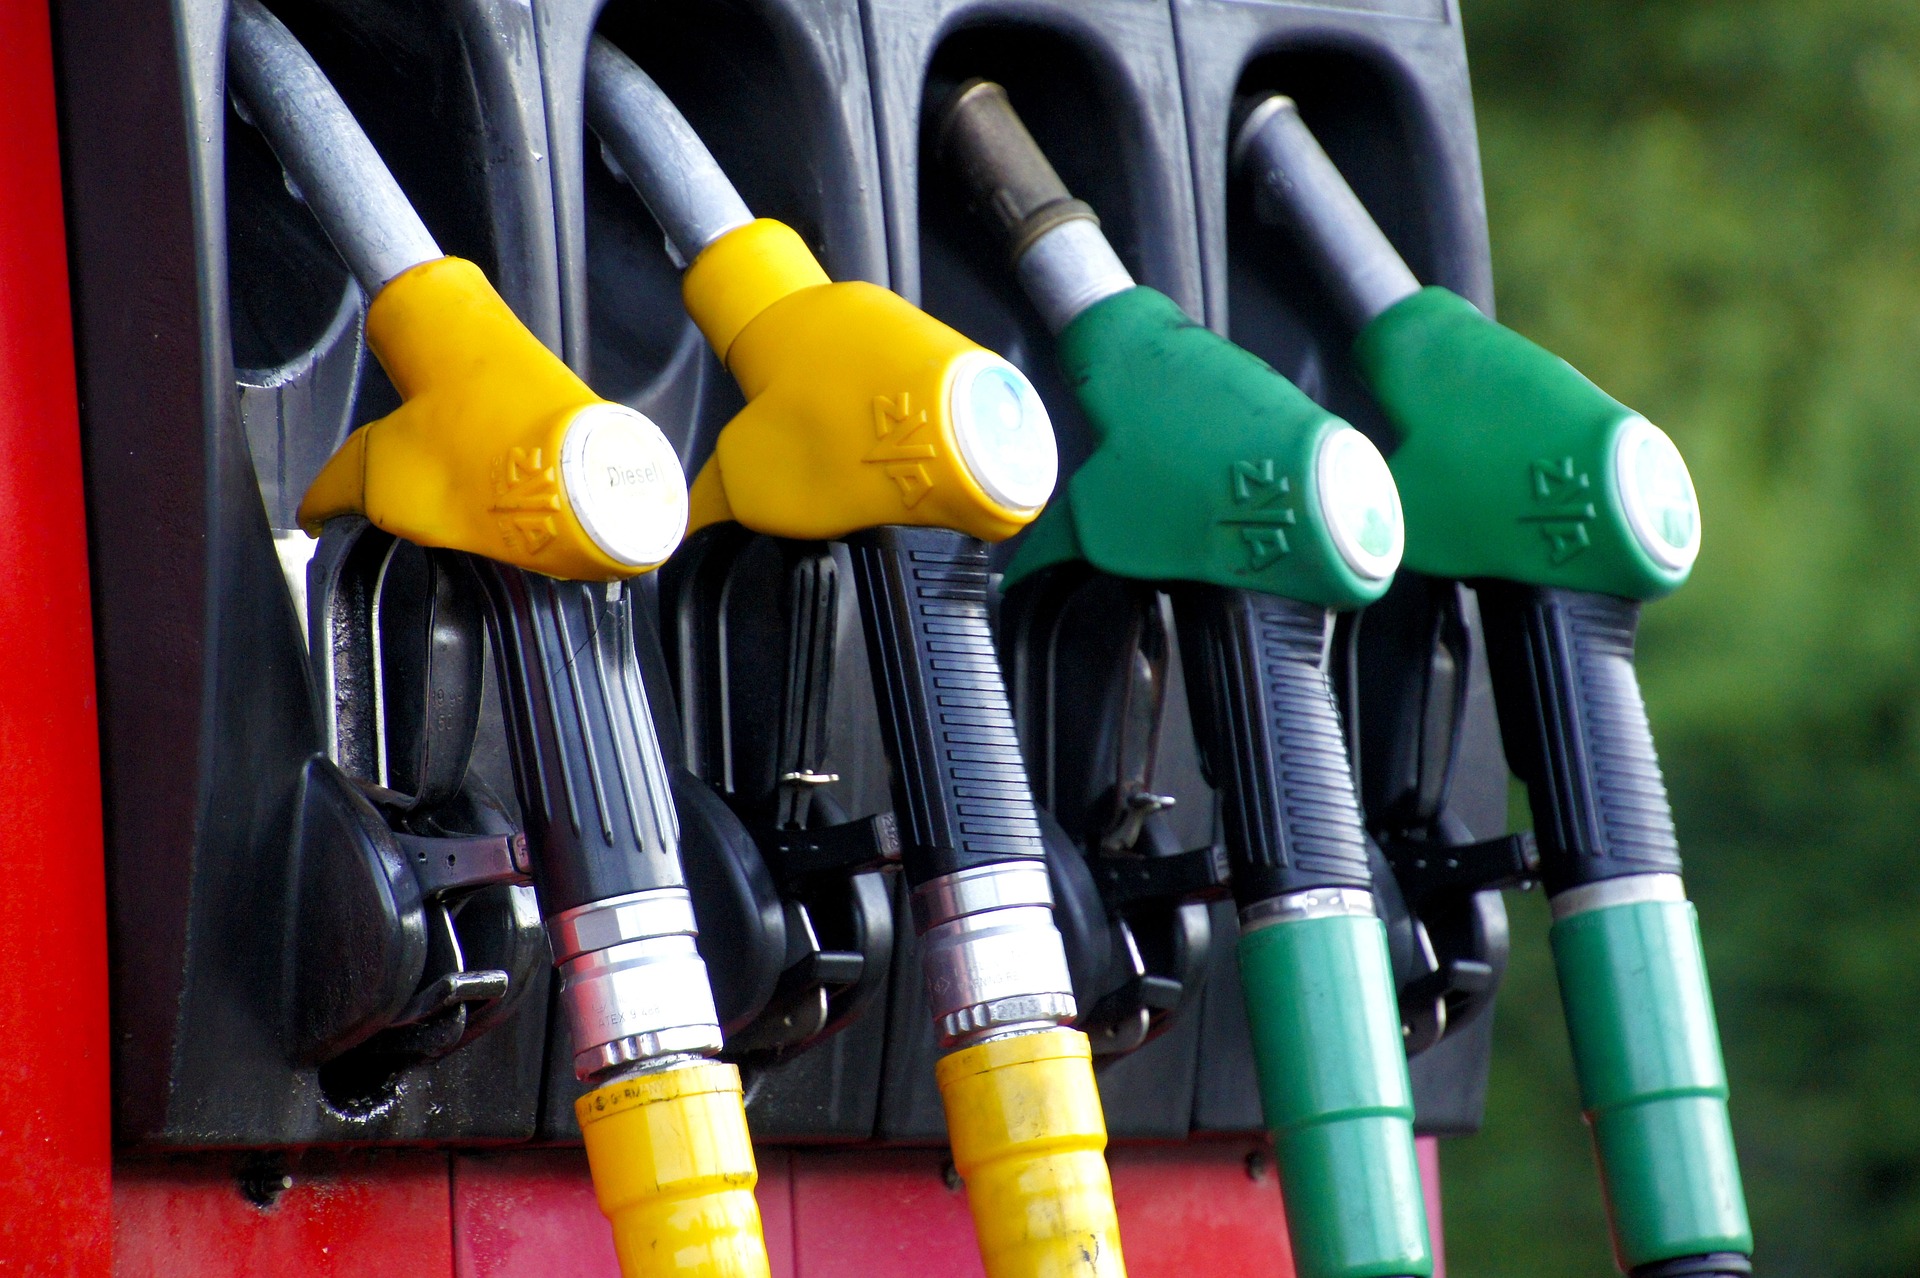 Rossz hír az autósoknak: tovább drágulnak az üzemanyagok szerdán